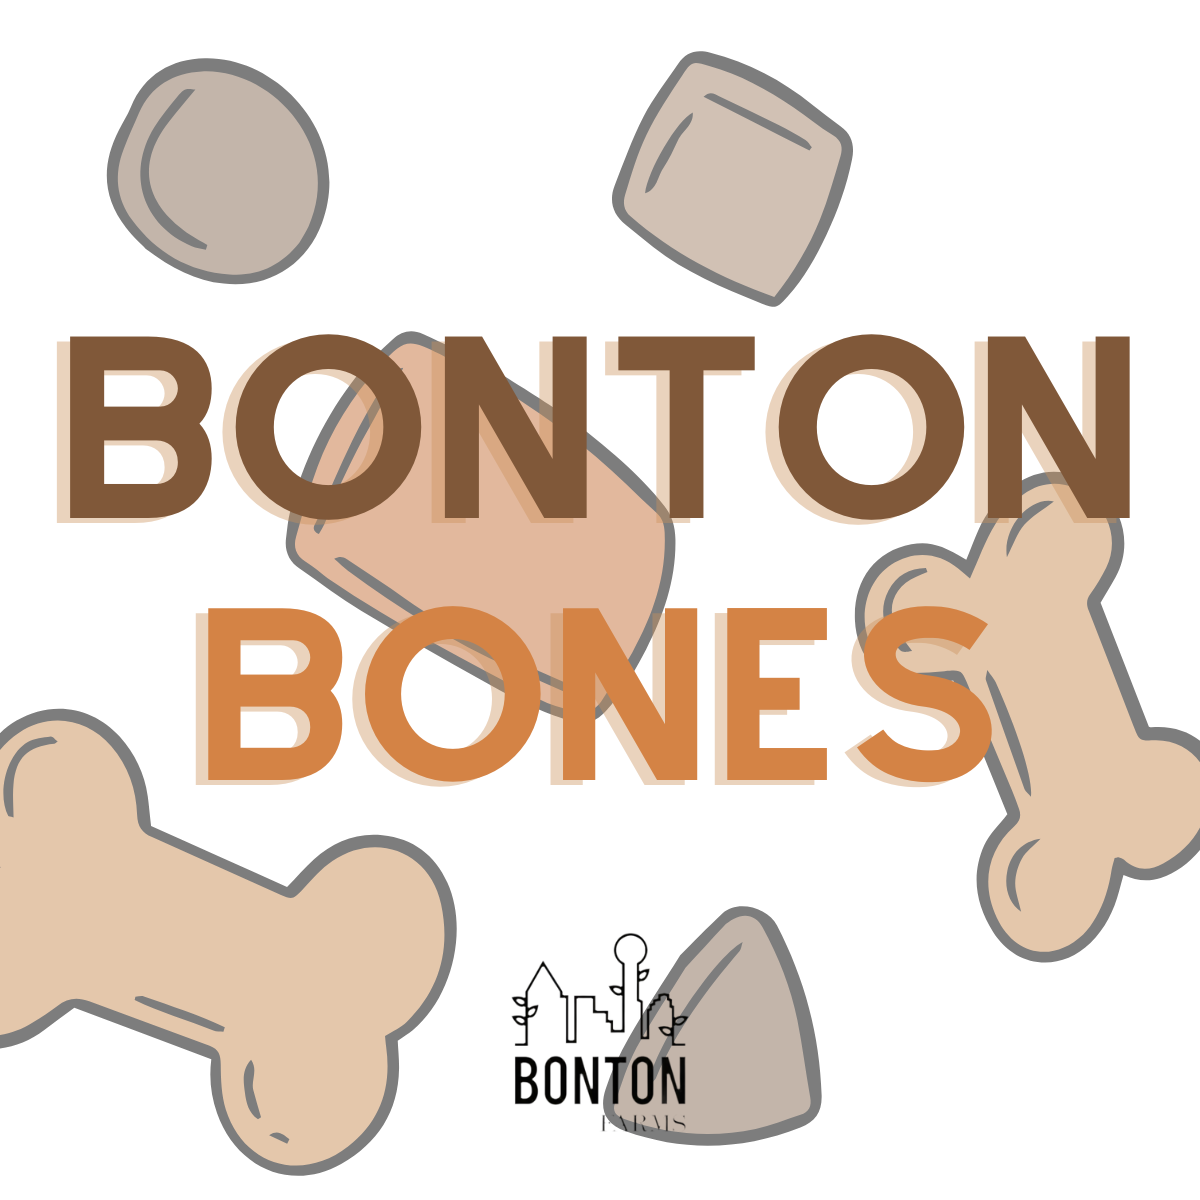 Bonton Bones